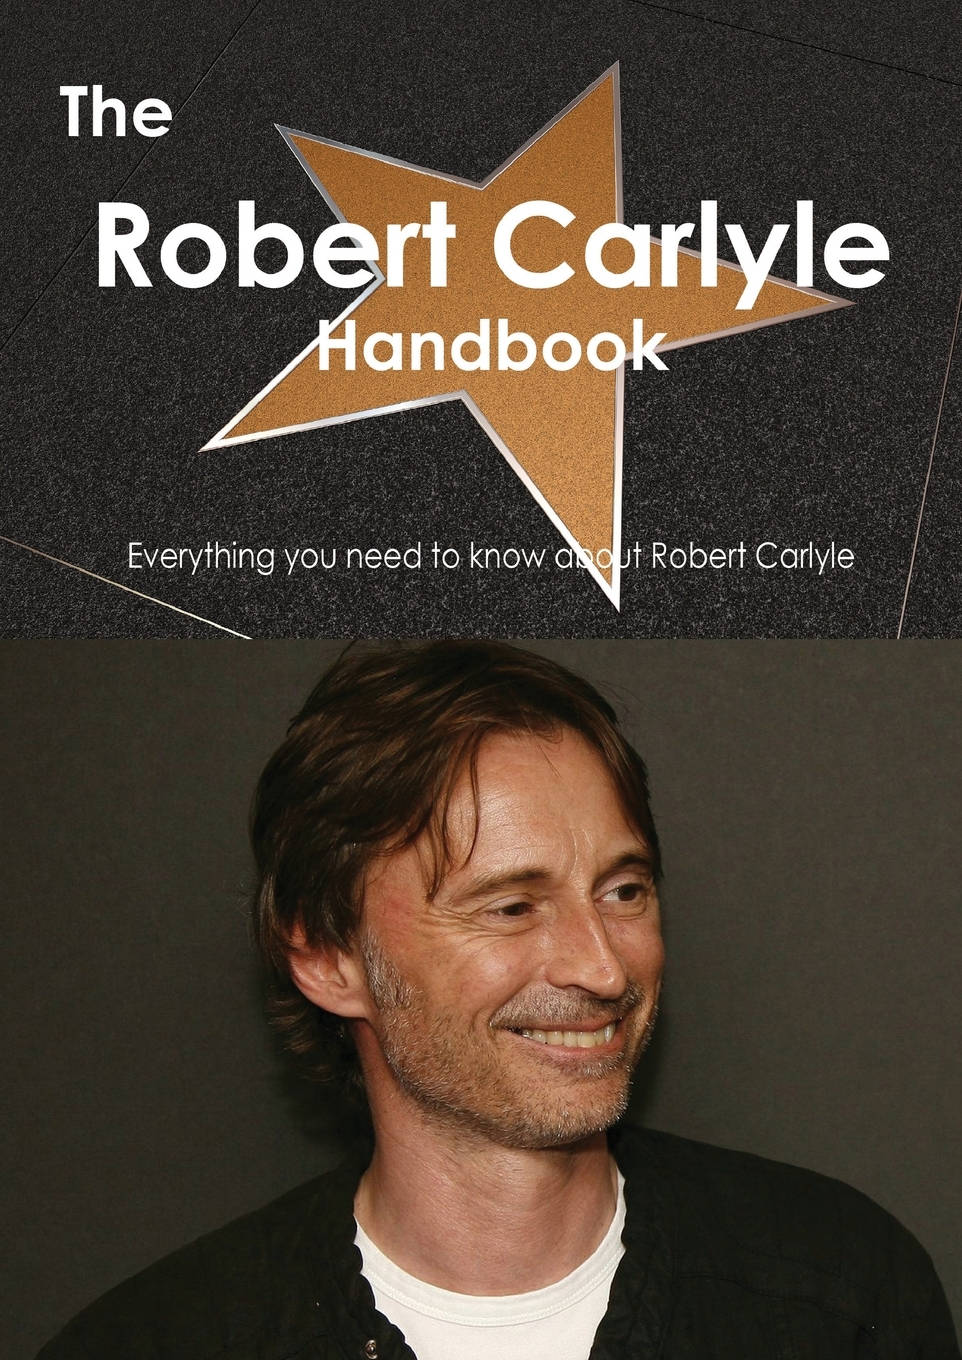 The Robert Carlyle Handbook Poster Wallpaper